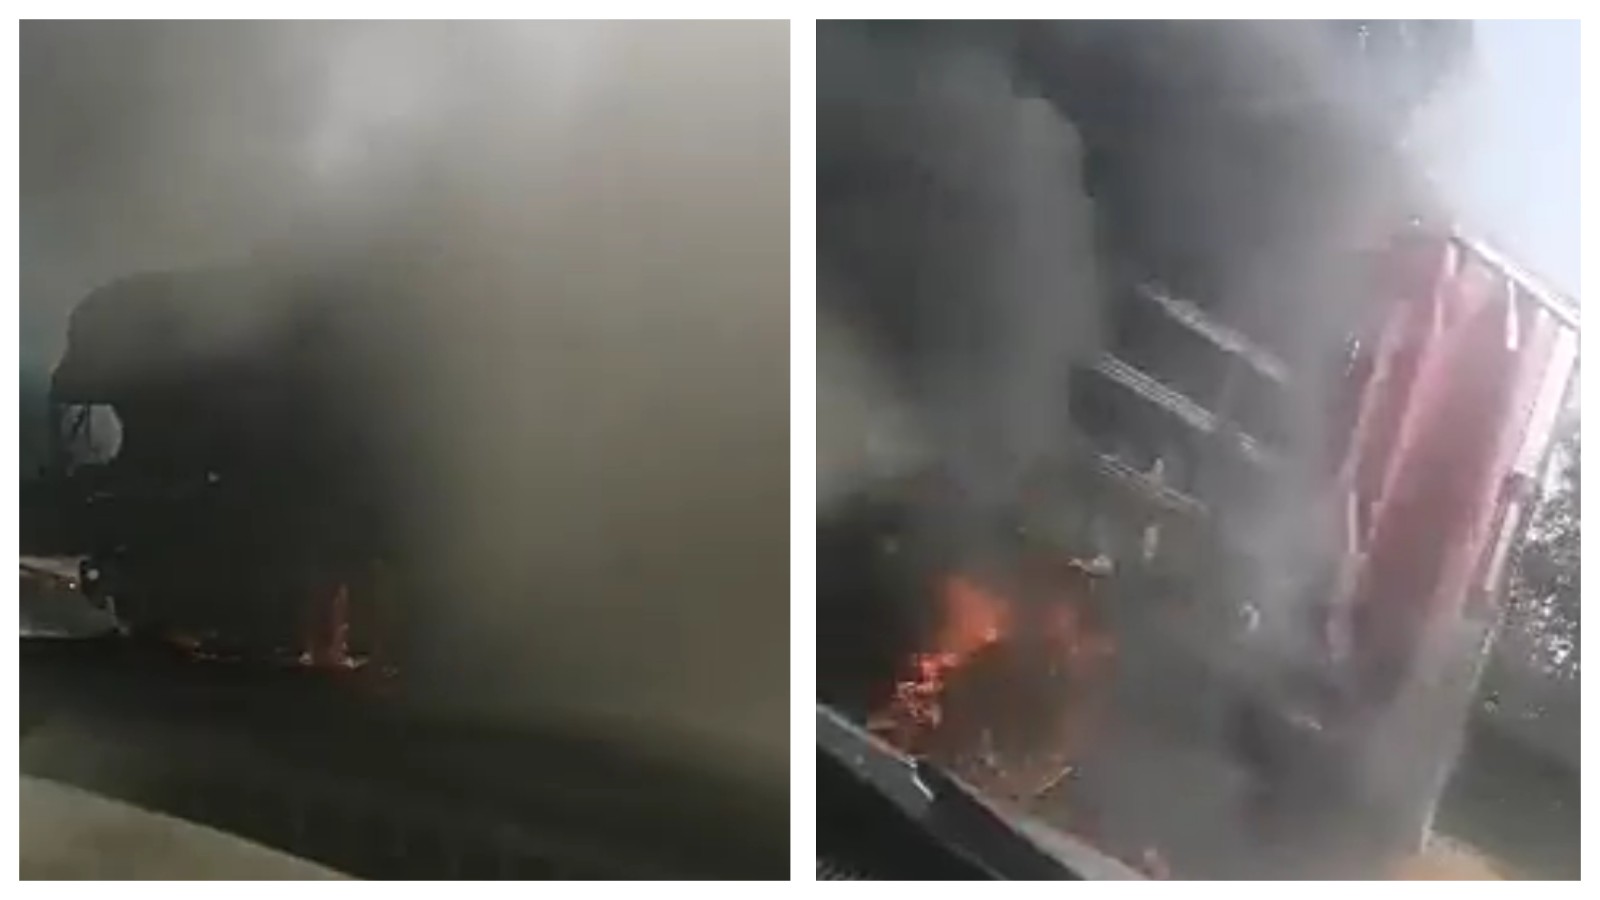 بالفيديو…. النيران تلتهم بالكامل شاحنة لشركة مشروبات بطريق تادلة ونجاة السائق بأعجوبة 